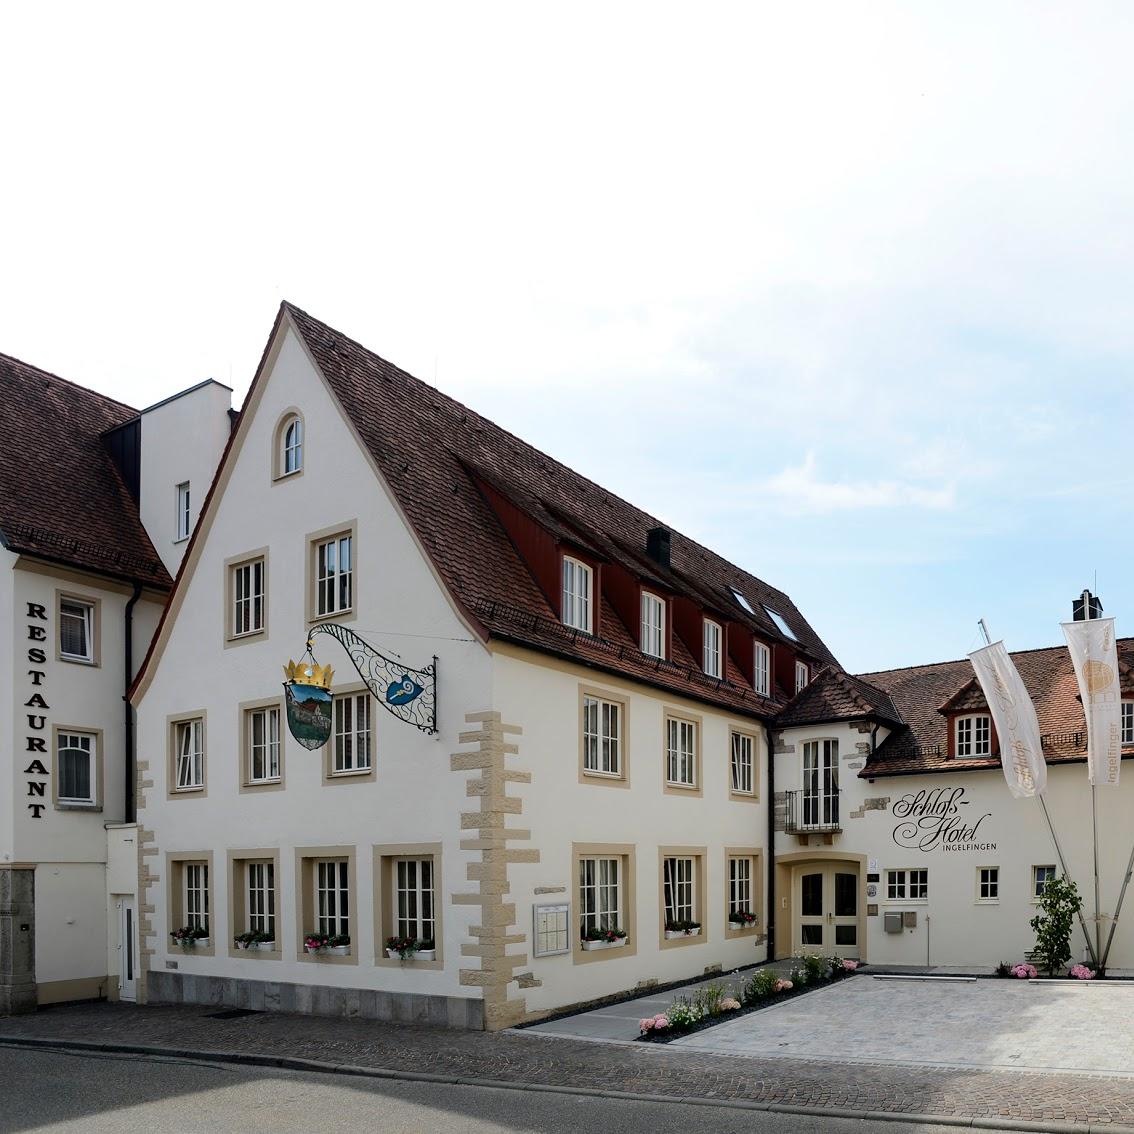 Restaurant "Schlosshotel" in Ingelfingen